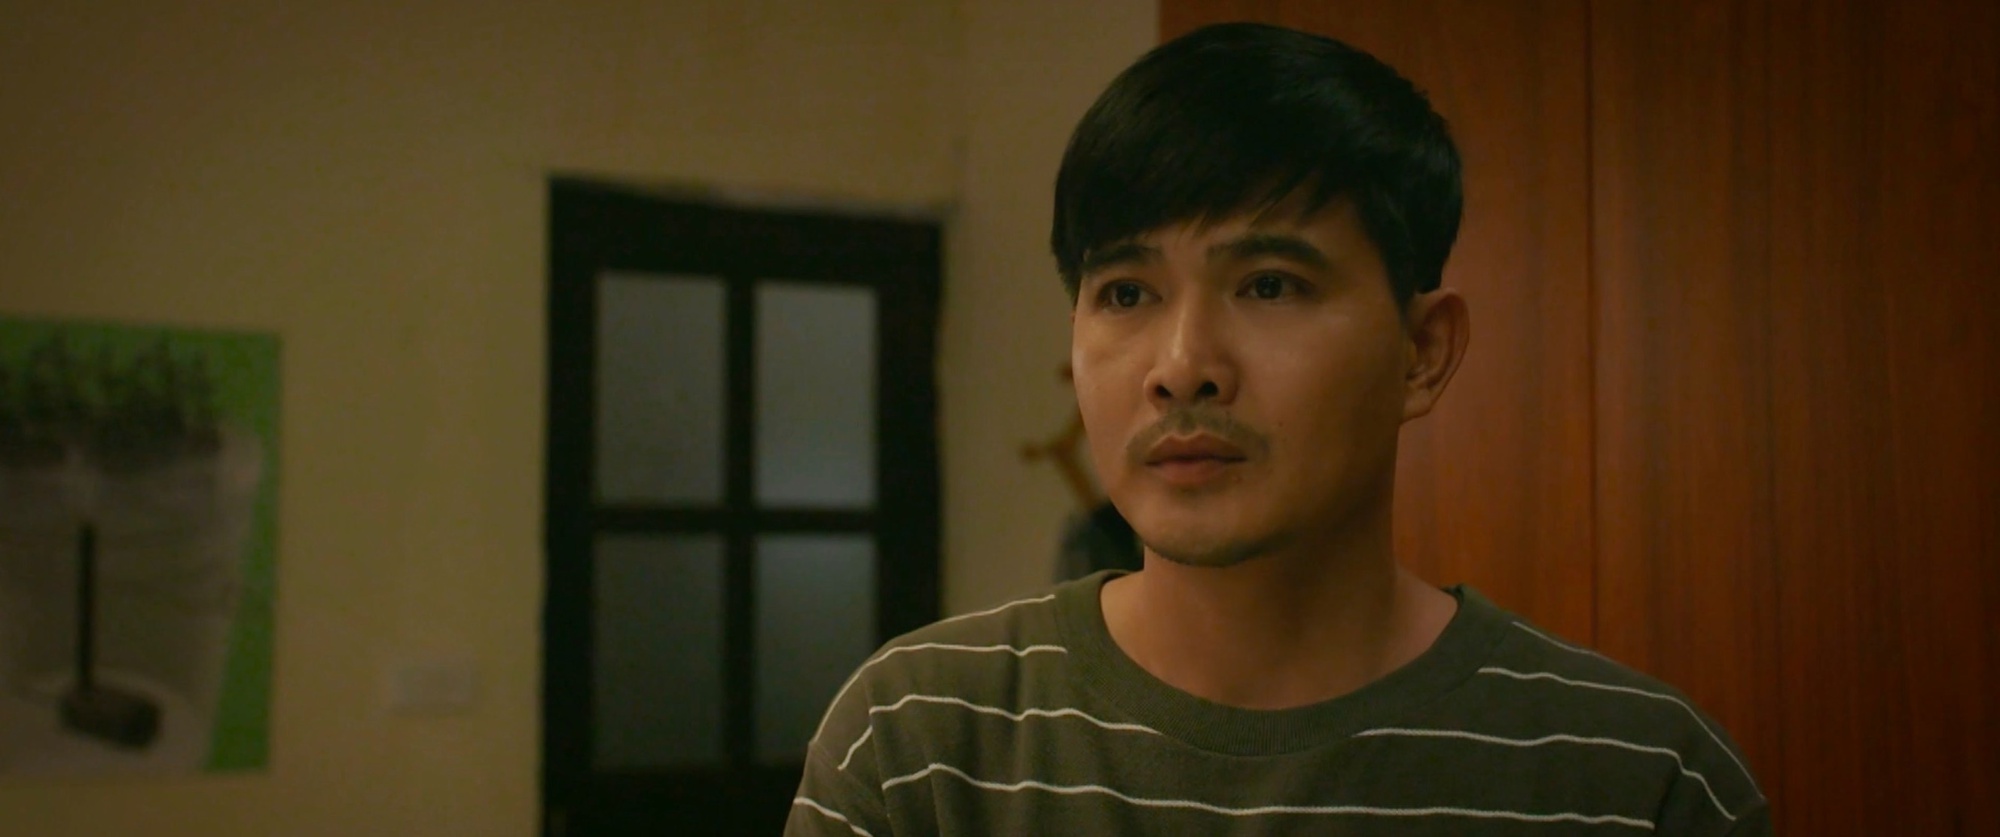 Bị cả nhà kết tội ngoại tình, nhân vật gây tranh cãi nhất phim Việt giờ vàng có cách hành xử ghi điểm với khán giả - Ảnh 2.